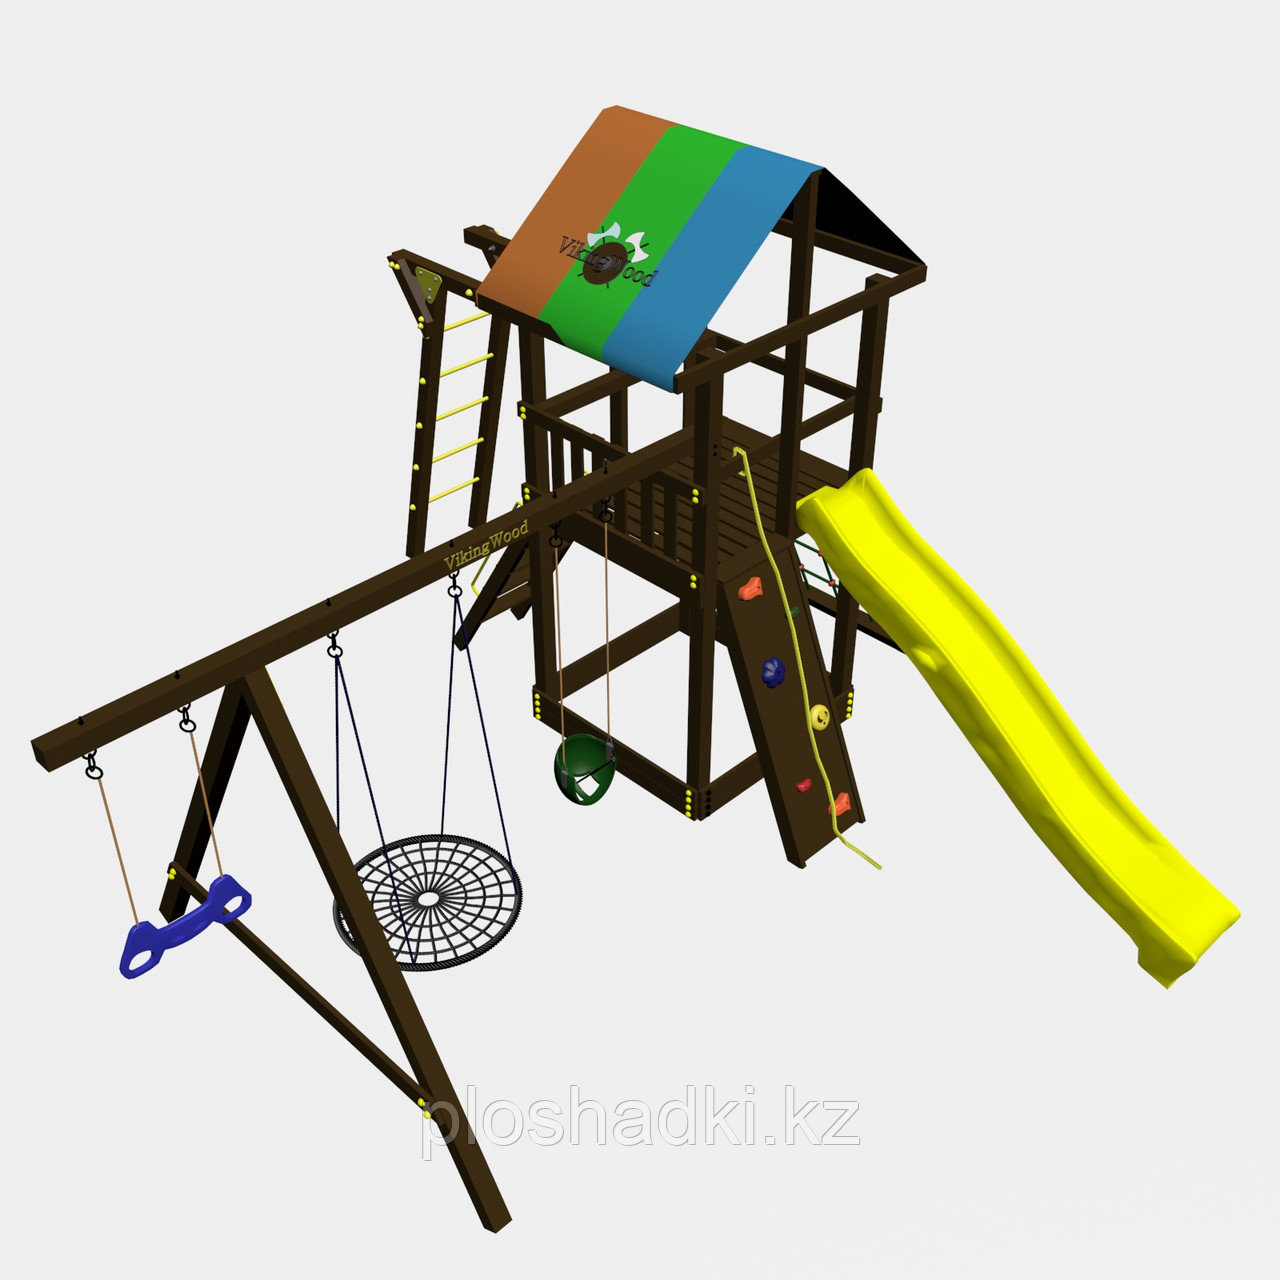 Игровой комплекс "Родео с рукоходом", цветная крыша, канатная сетка, скалодром, качели, фото 1